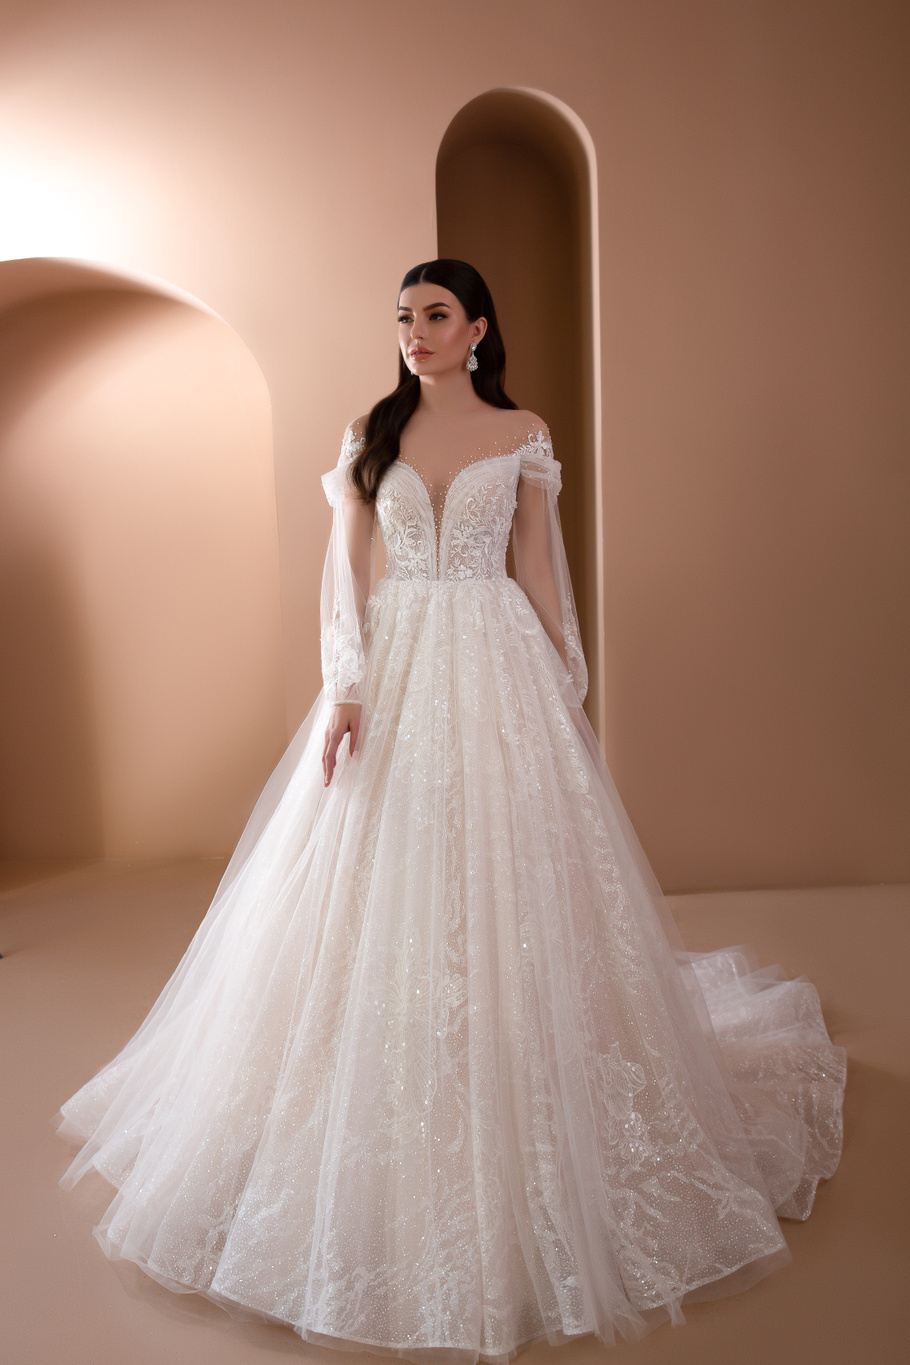 Купить свадебное платье Эредхел Армония из коллекции 2021 года в салоне «Мэри Трюфель»